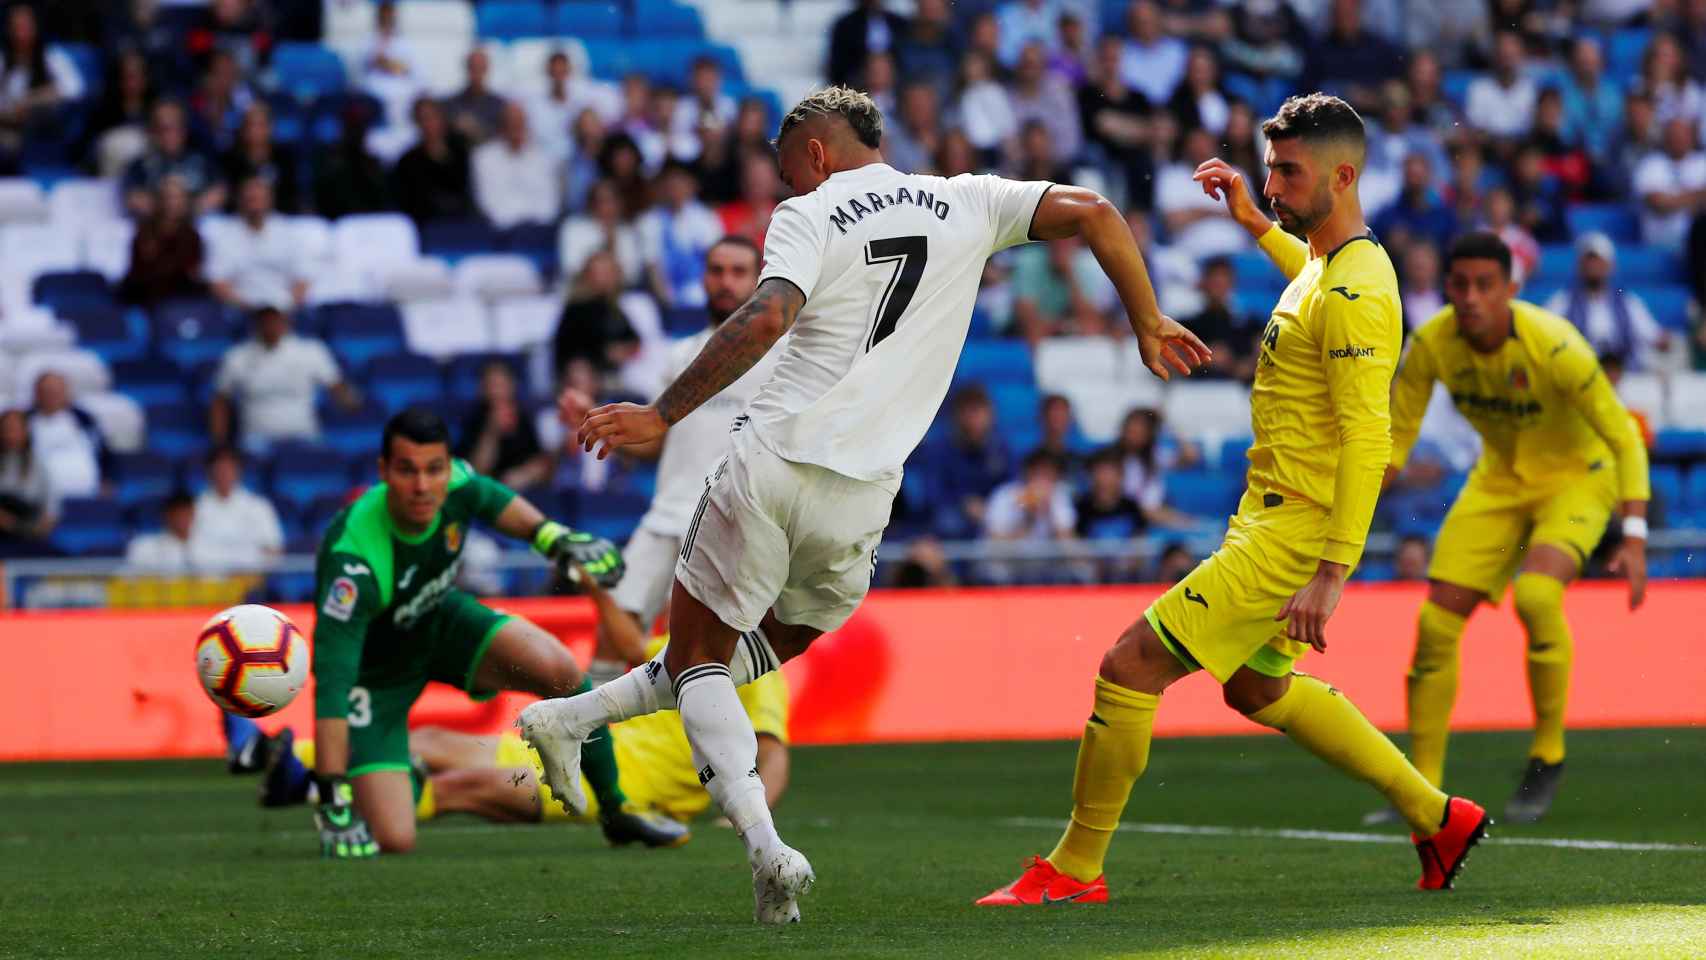 Mariano remata dentro del área del Villarreal para hacer su segundo gol